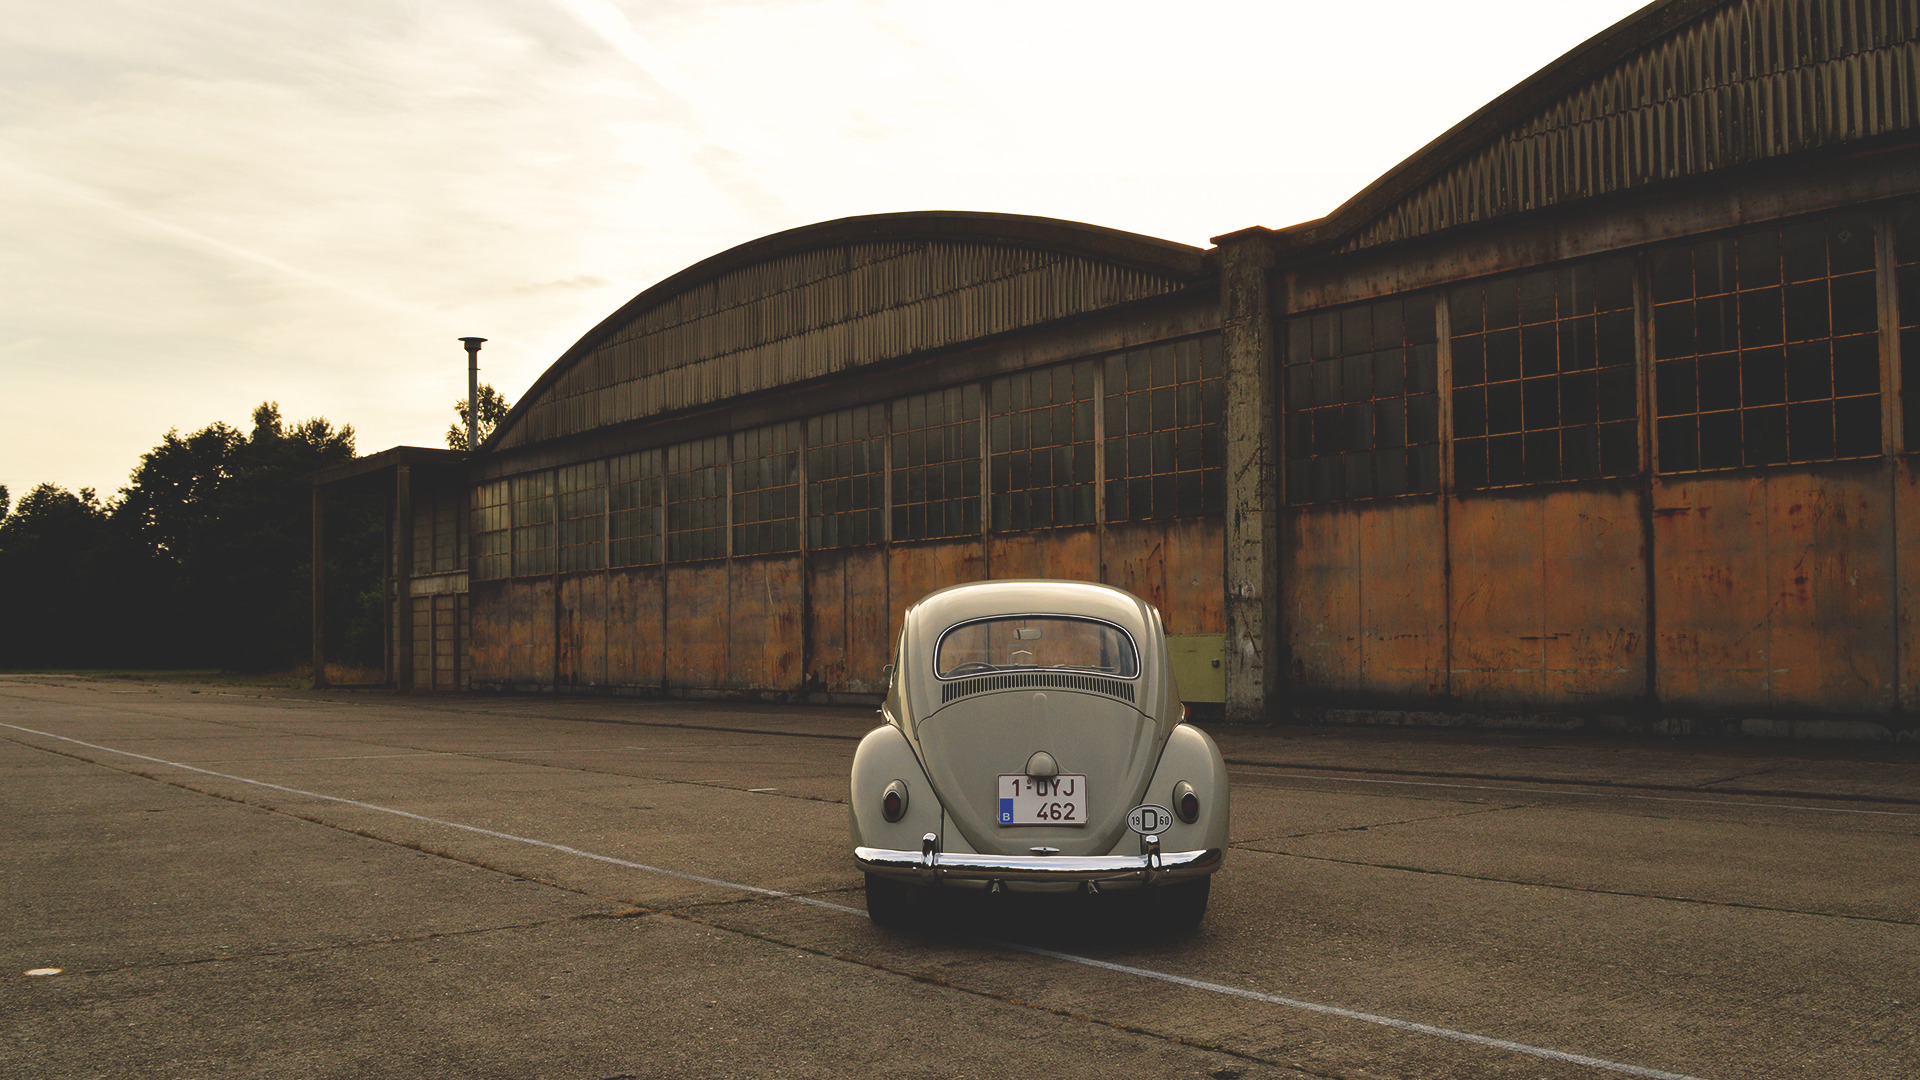 Volkswagen, Oldtimers, Vintage, Belgium, Car, Vehicle, Old Building, Volkswagen Beetle Wallpaper